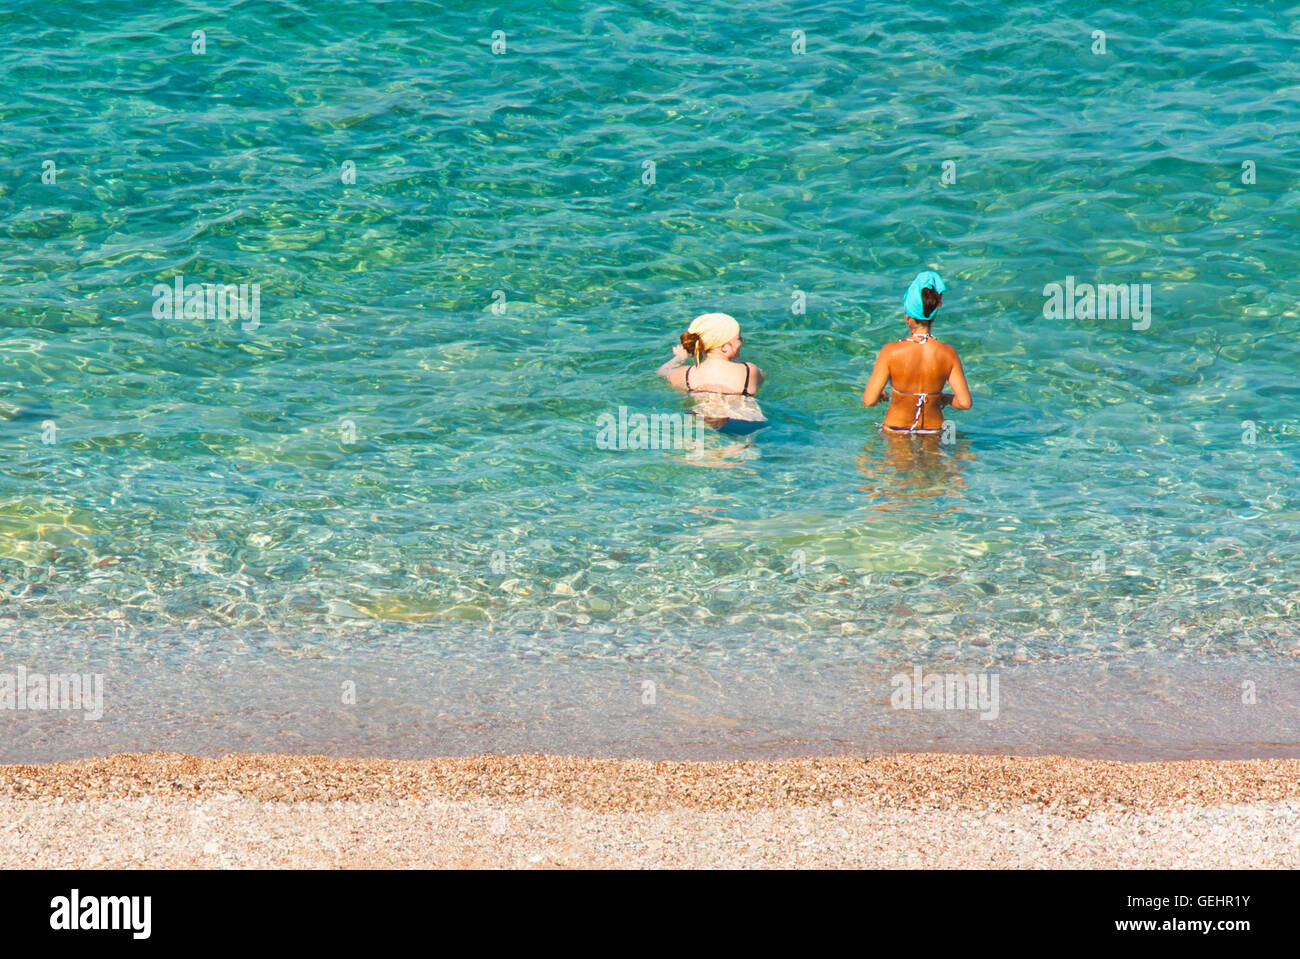 Petrovac, Montenegro - Julio 12, 2016: Dos mujeres jóvenes con diferente tipo de piel entrar al agua Foto de stock